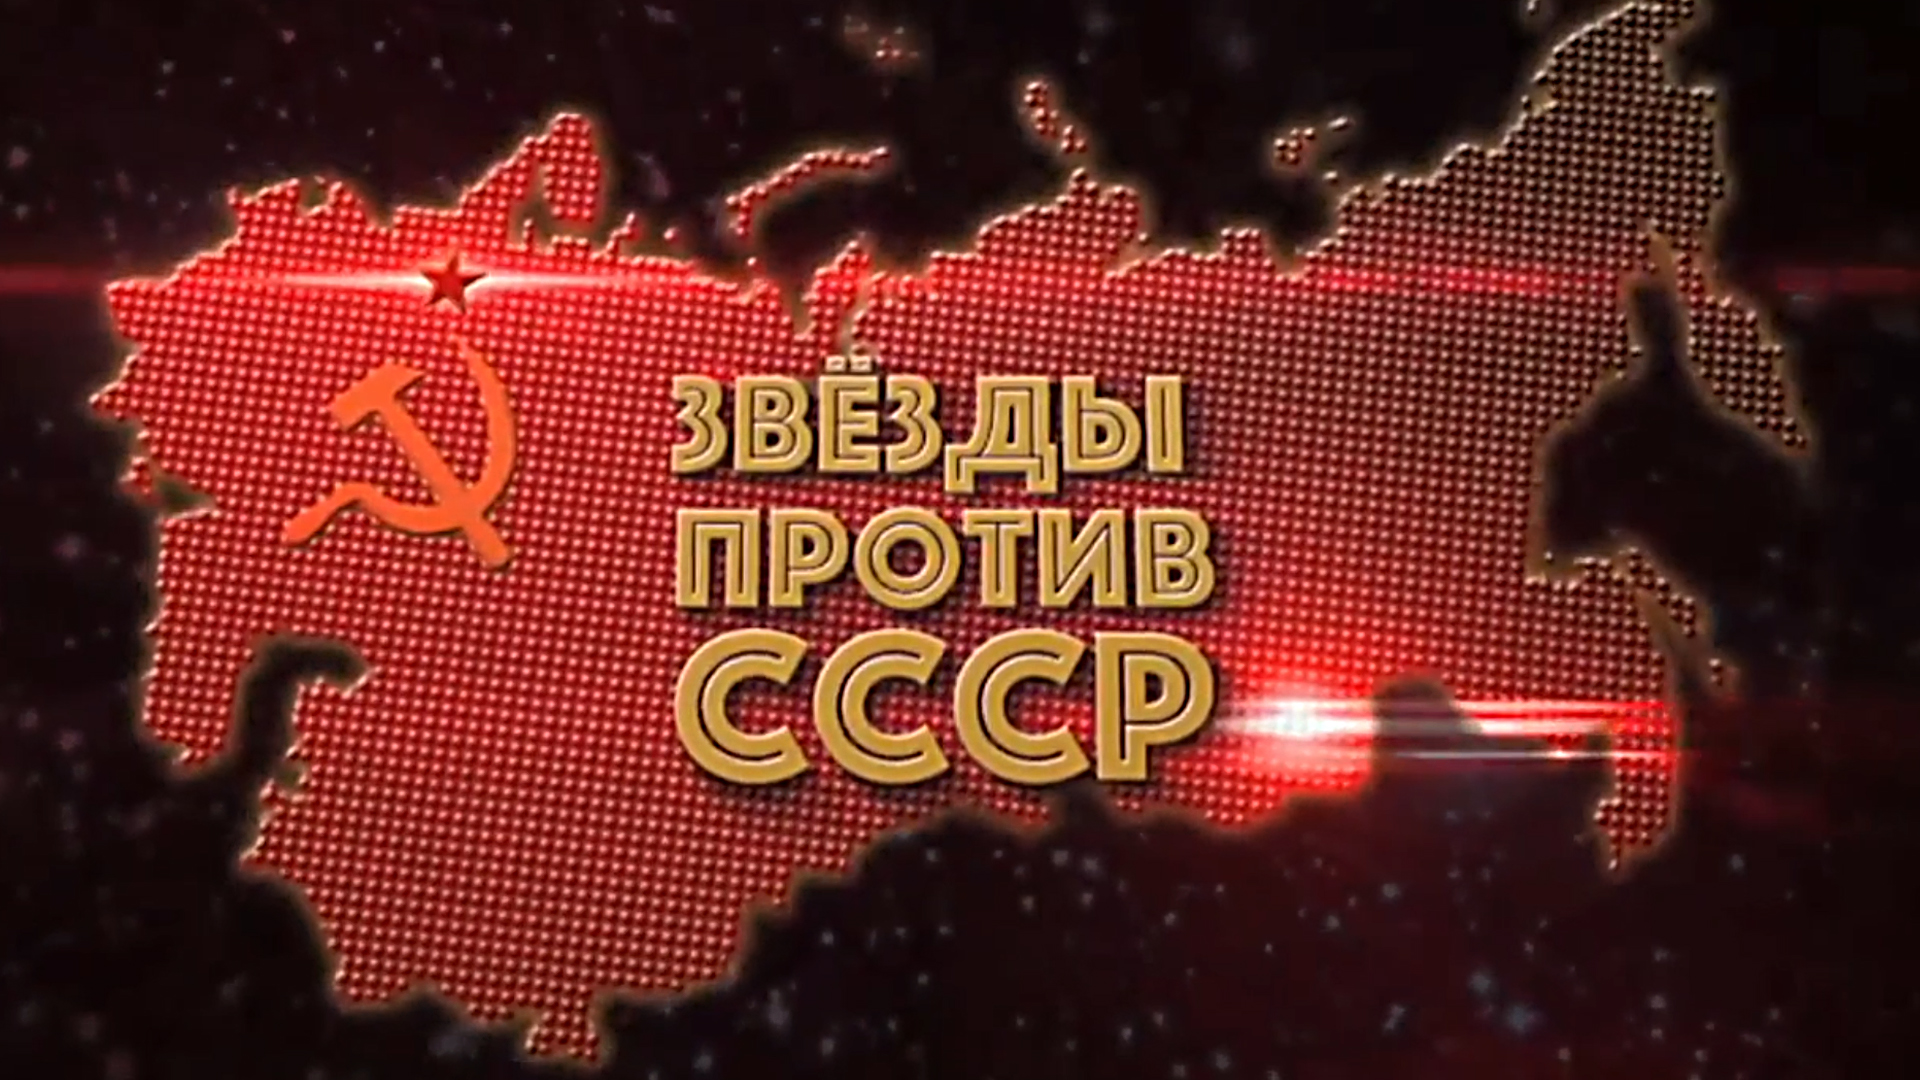 Звёзды против СССР